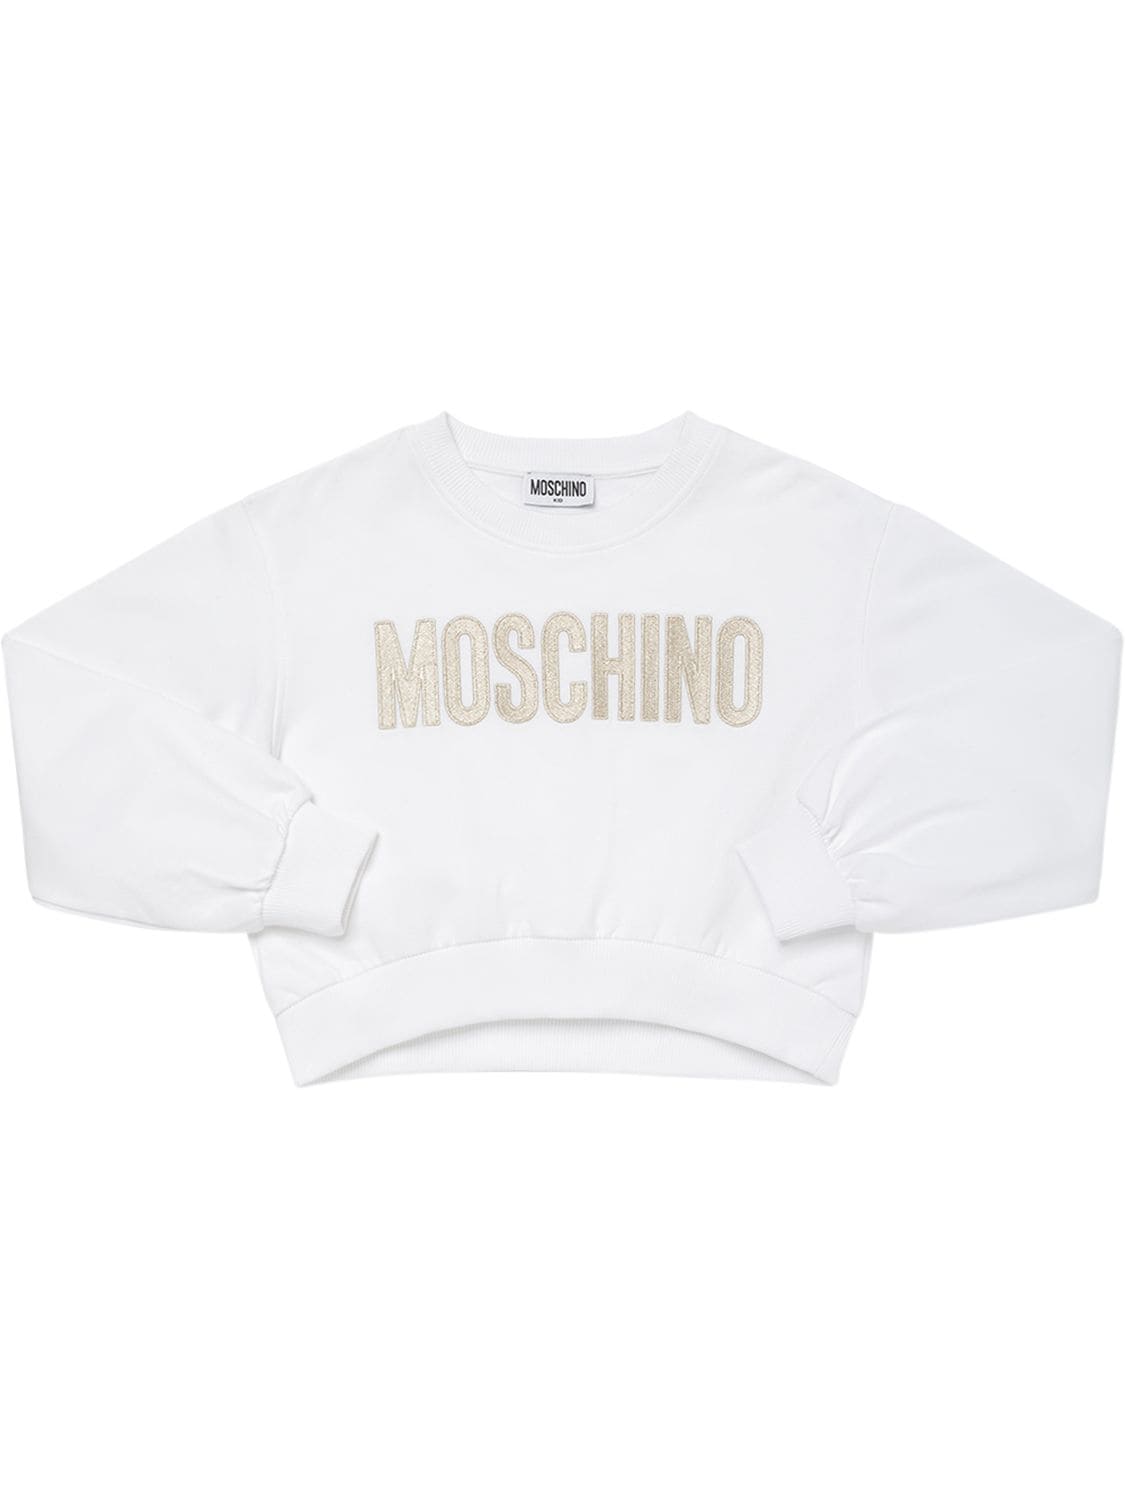 Moschino Kids logo-print cotton sweatshirt - Black